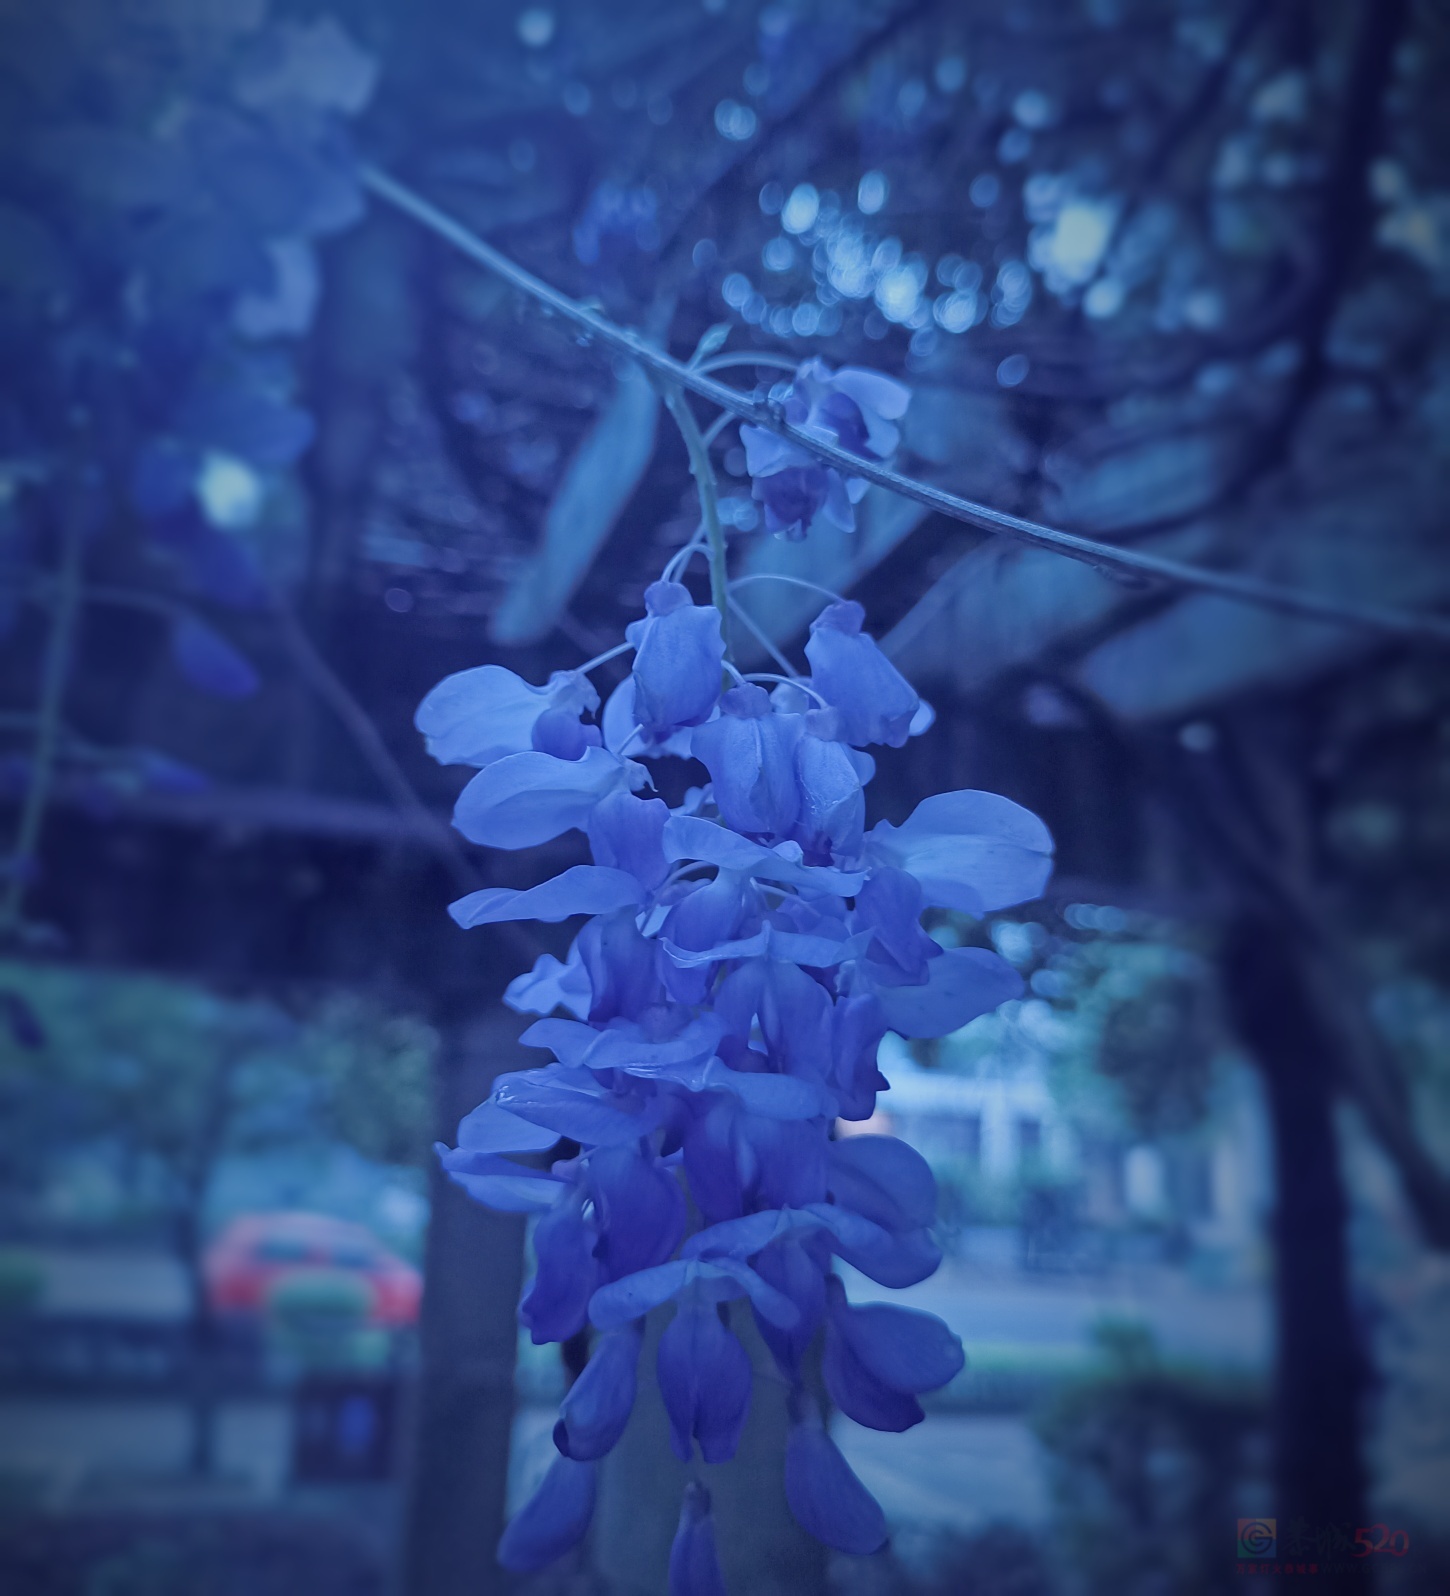 茶江河边的紫藤花盛开了。105 / 作者:风云客 / 帖子ID:305427